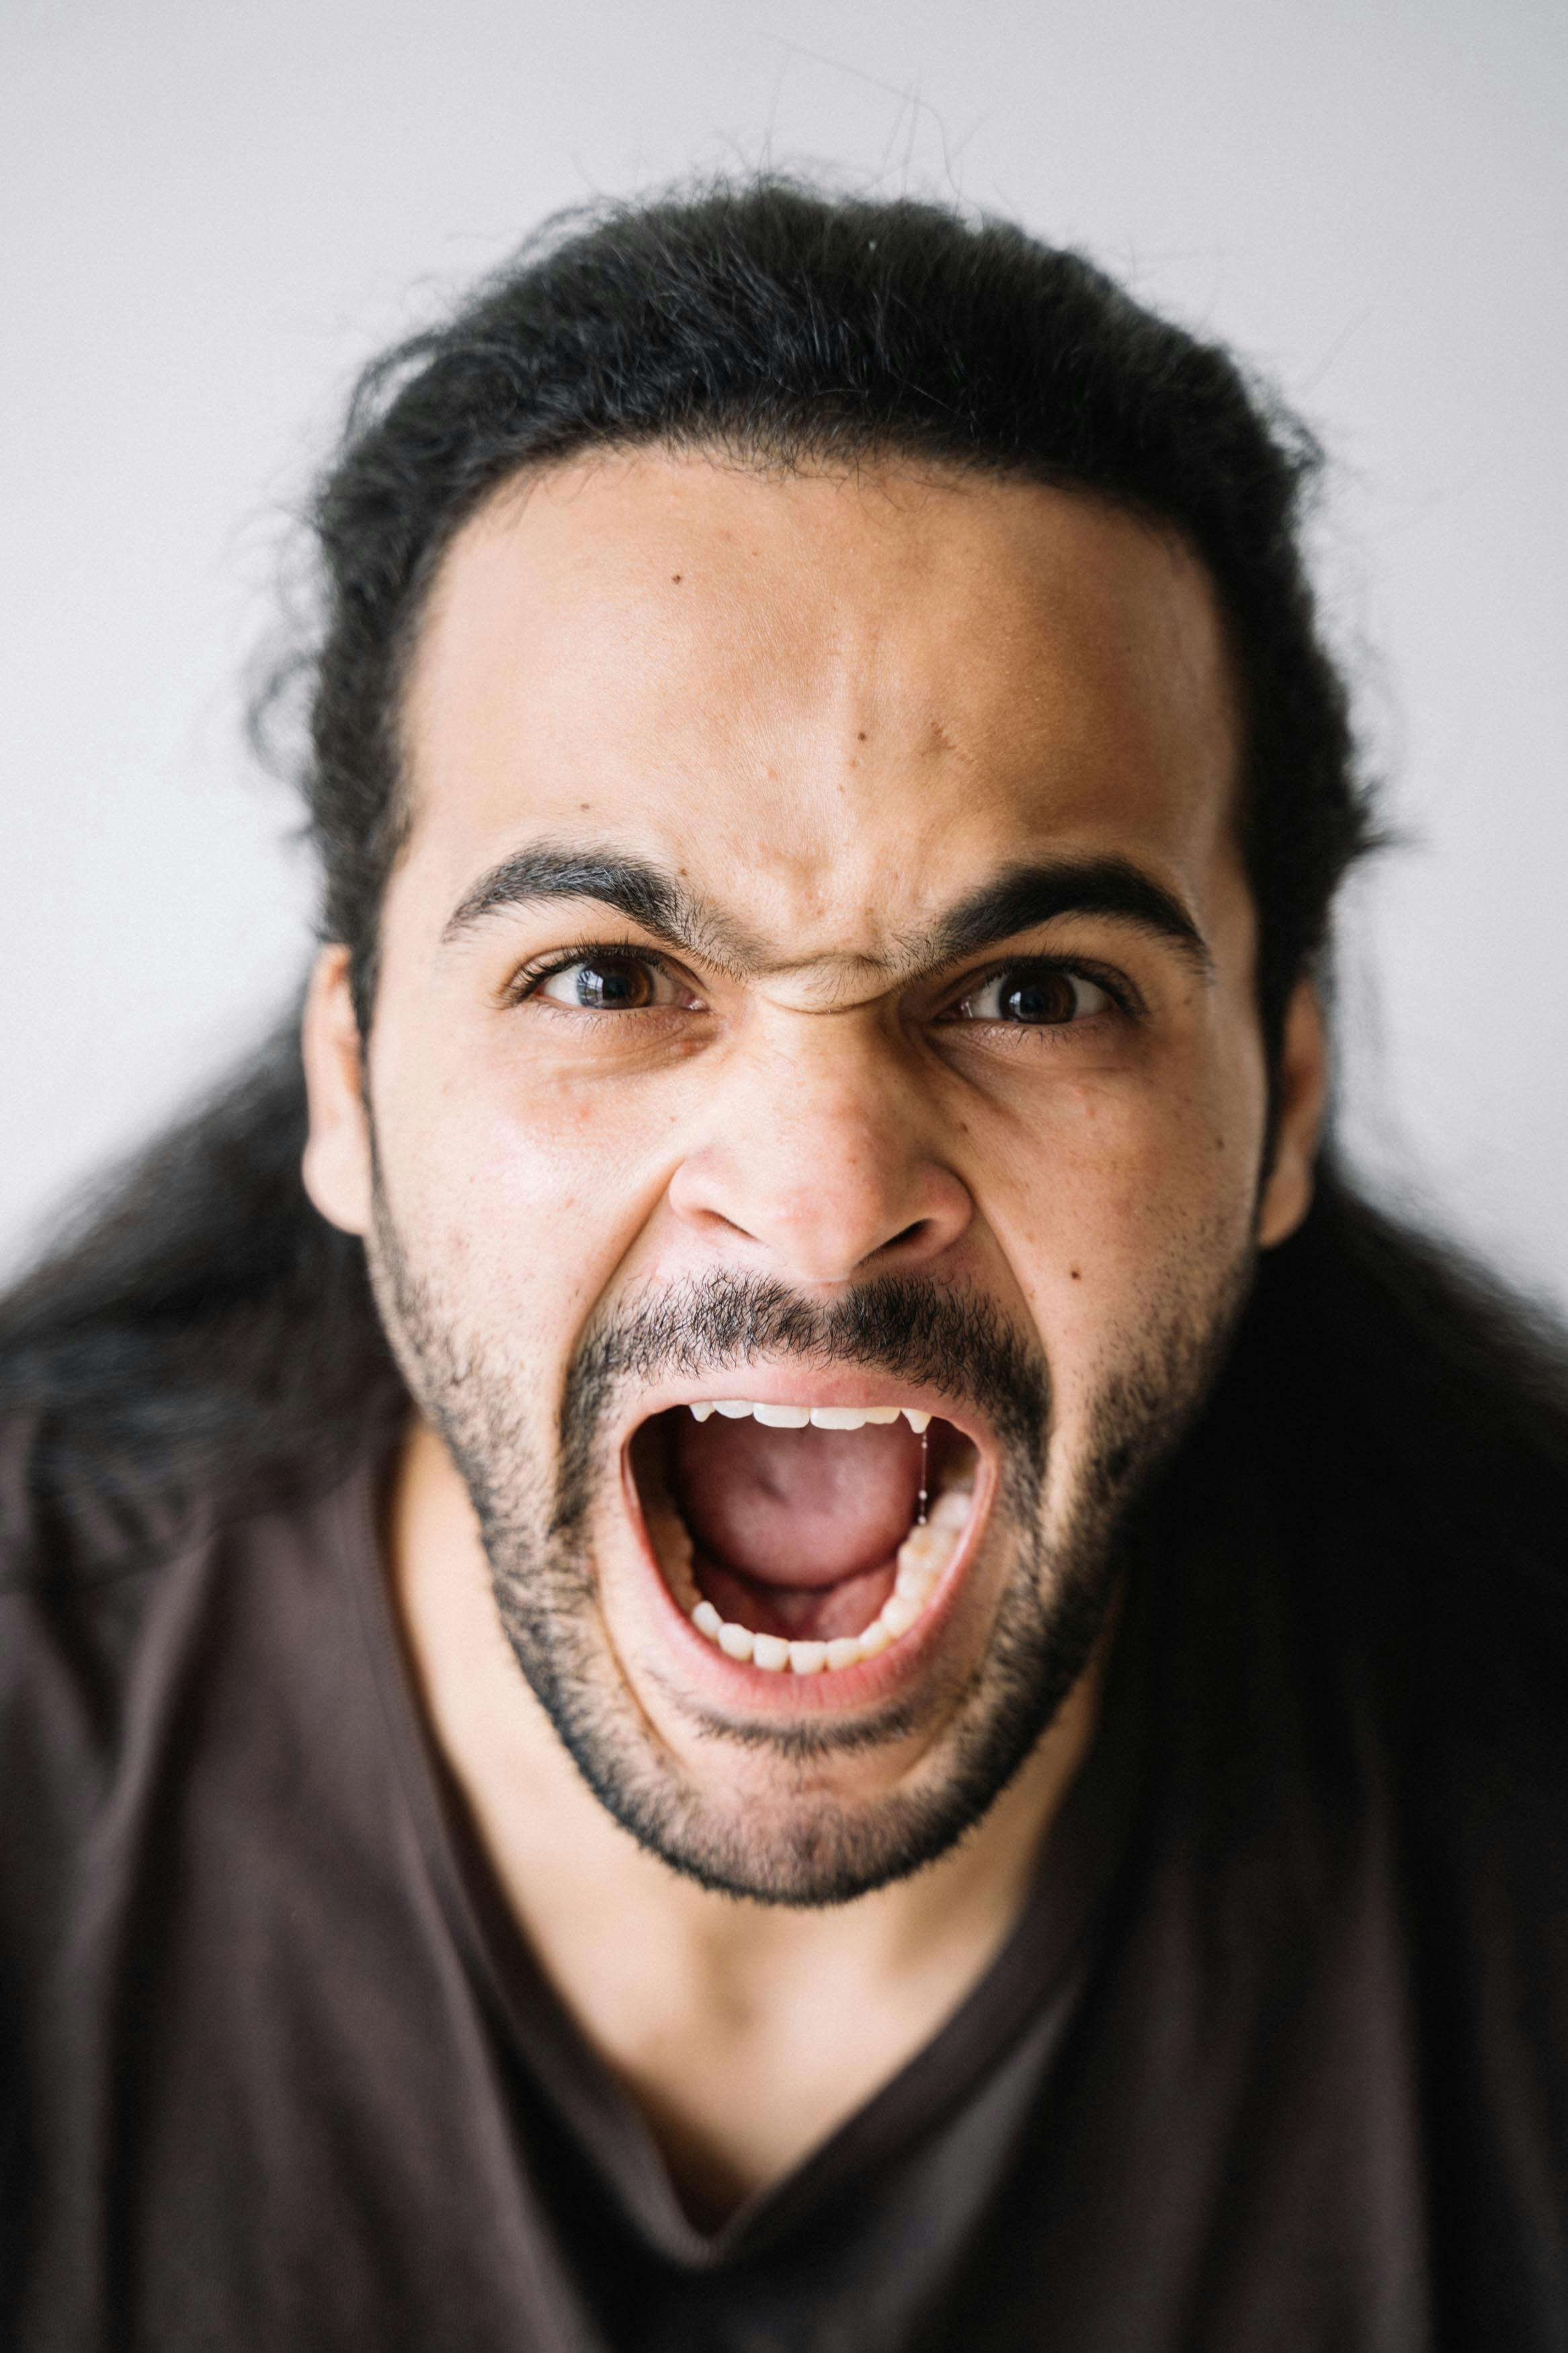 Un homme en colère qui crie | Source : Pexels